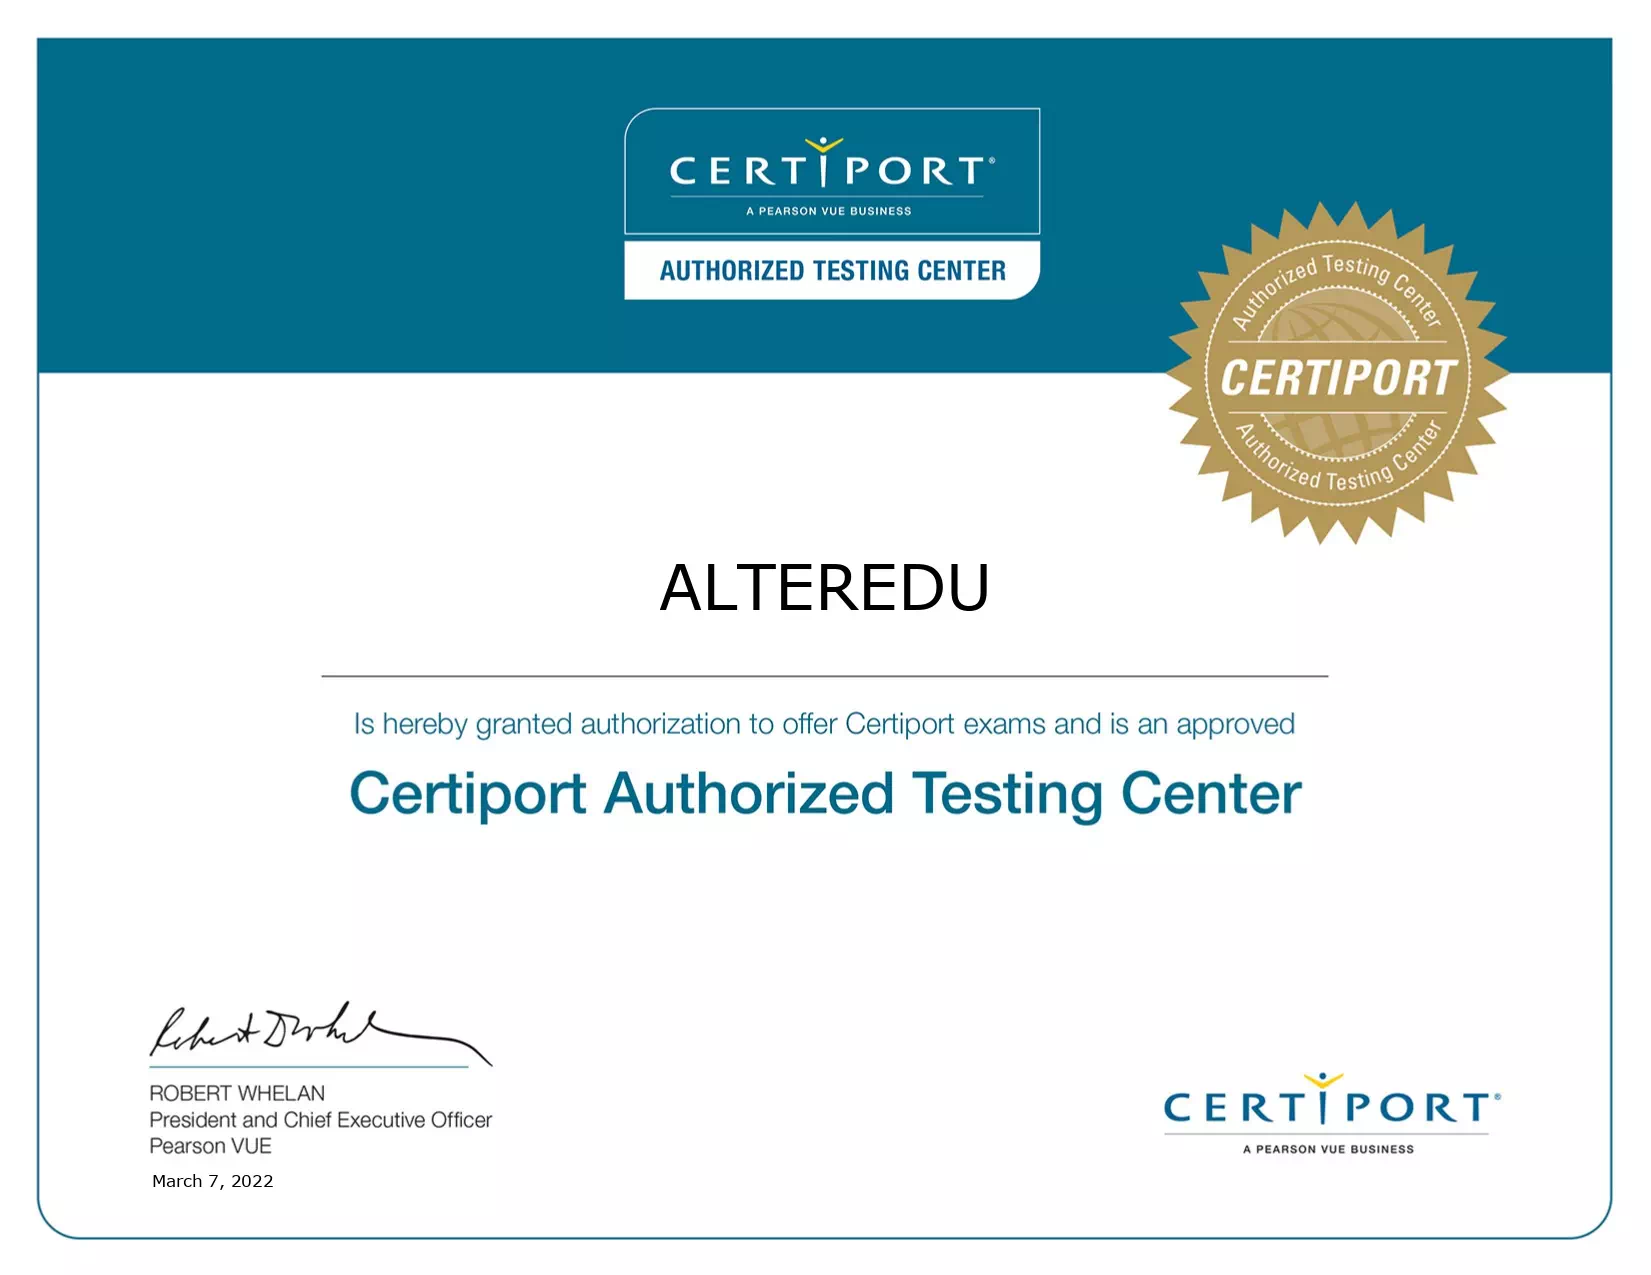 testing cernter autorizzato certiport